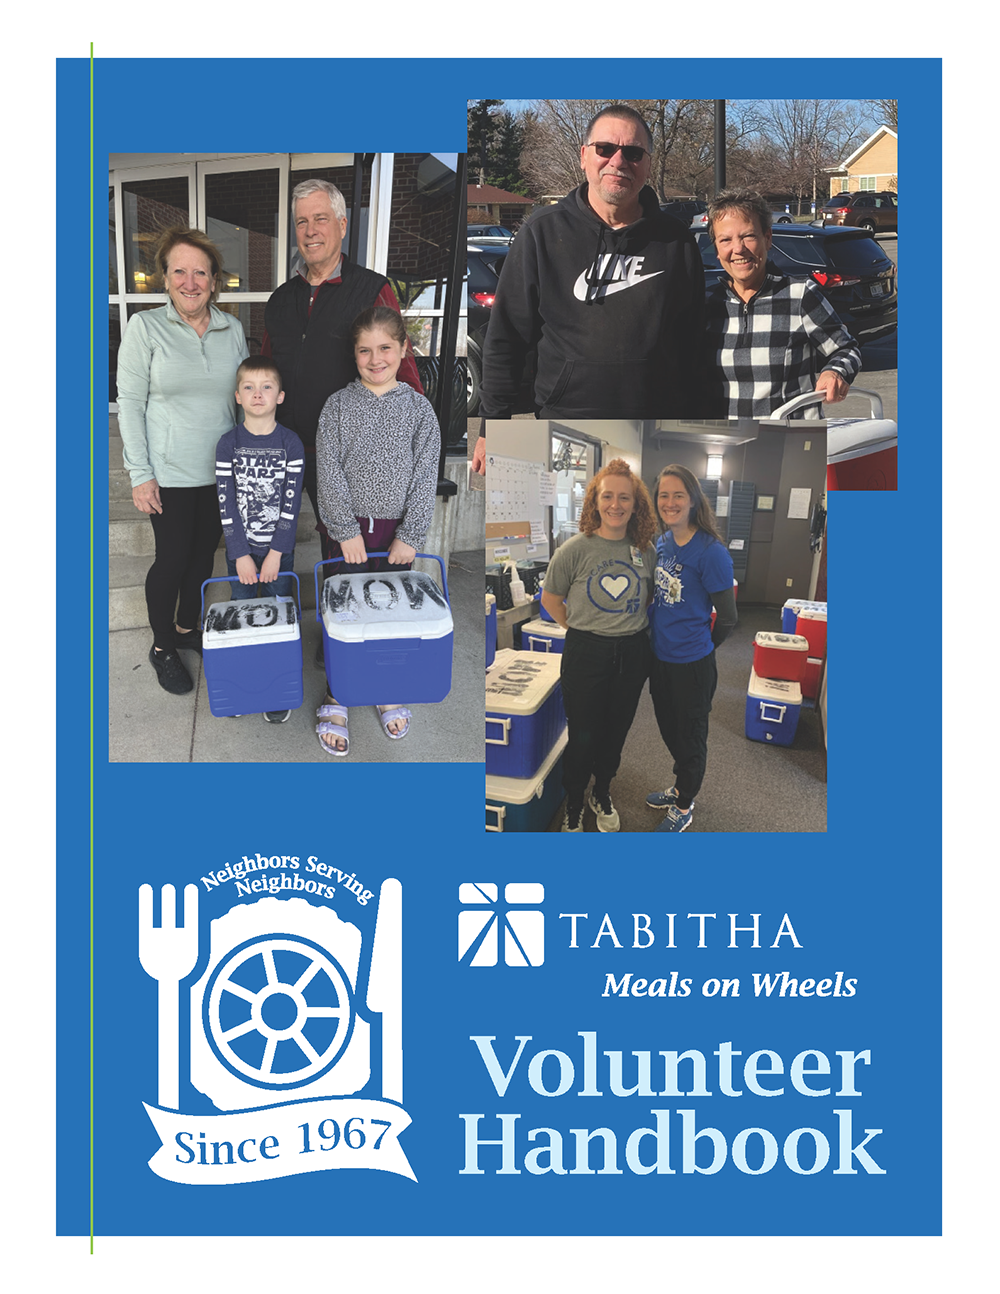 Tabitha Meals on Wheels Volunteer Handbook